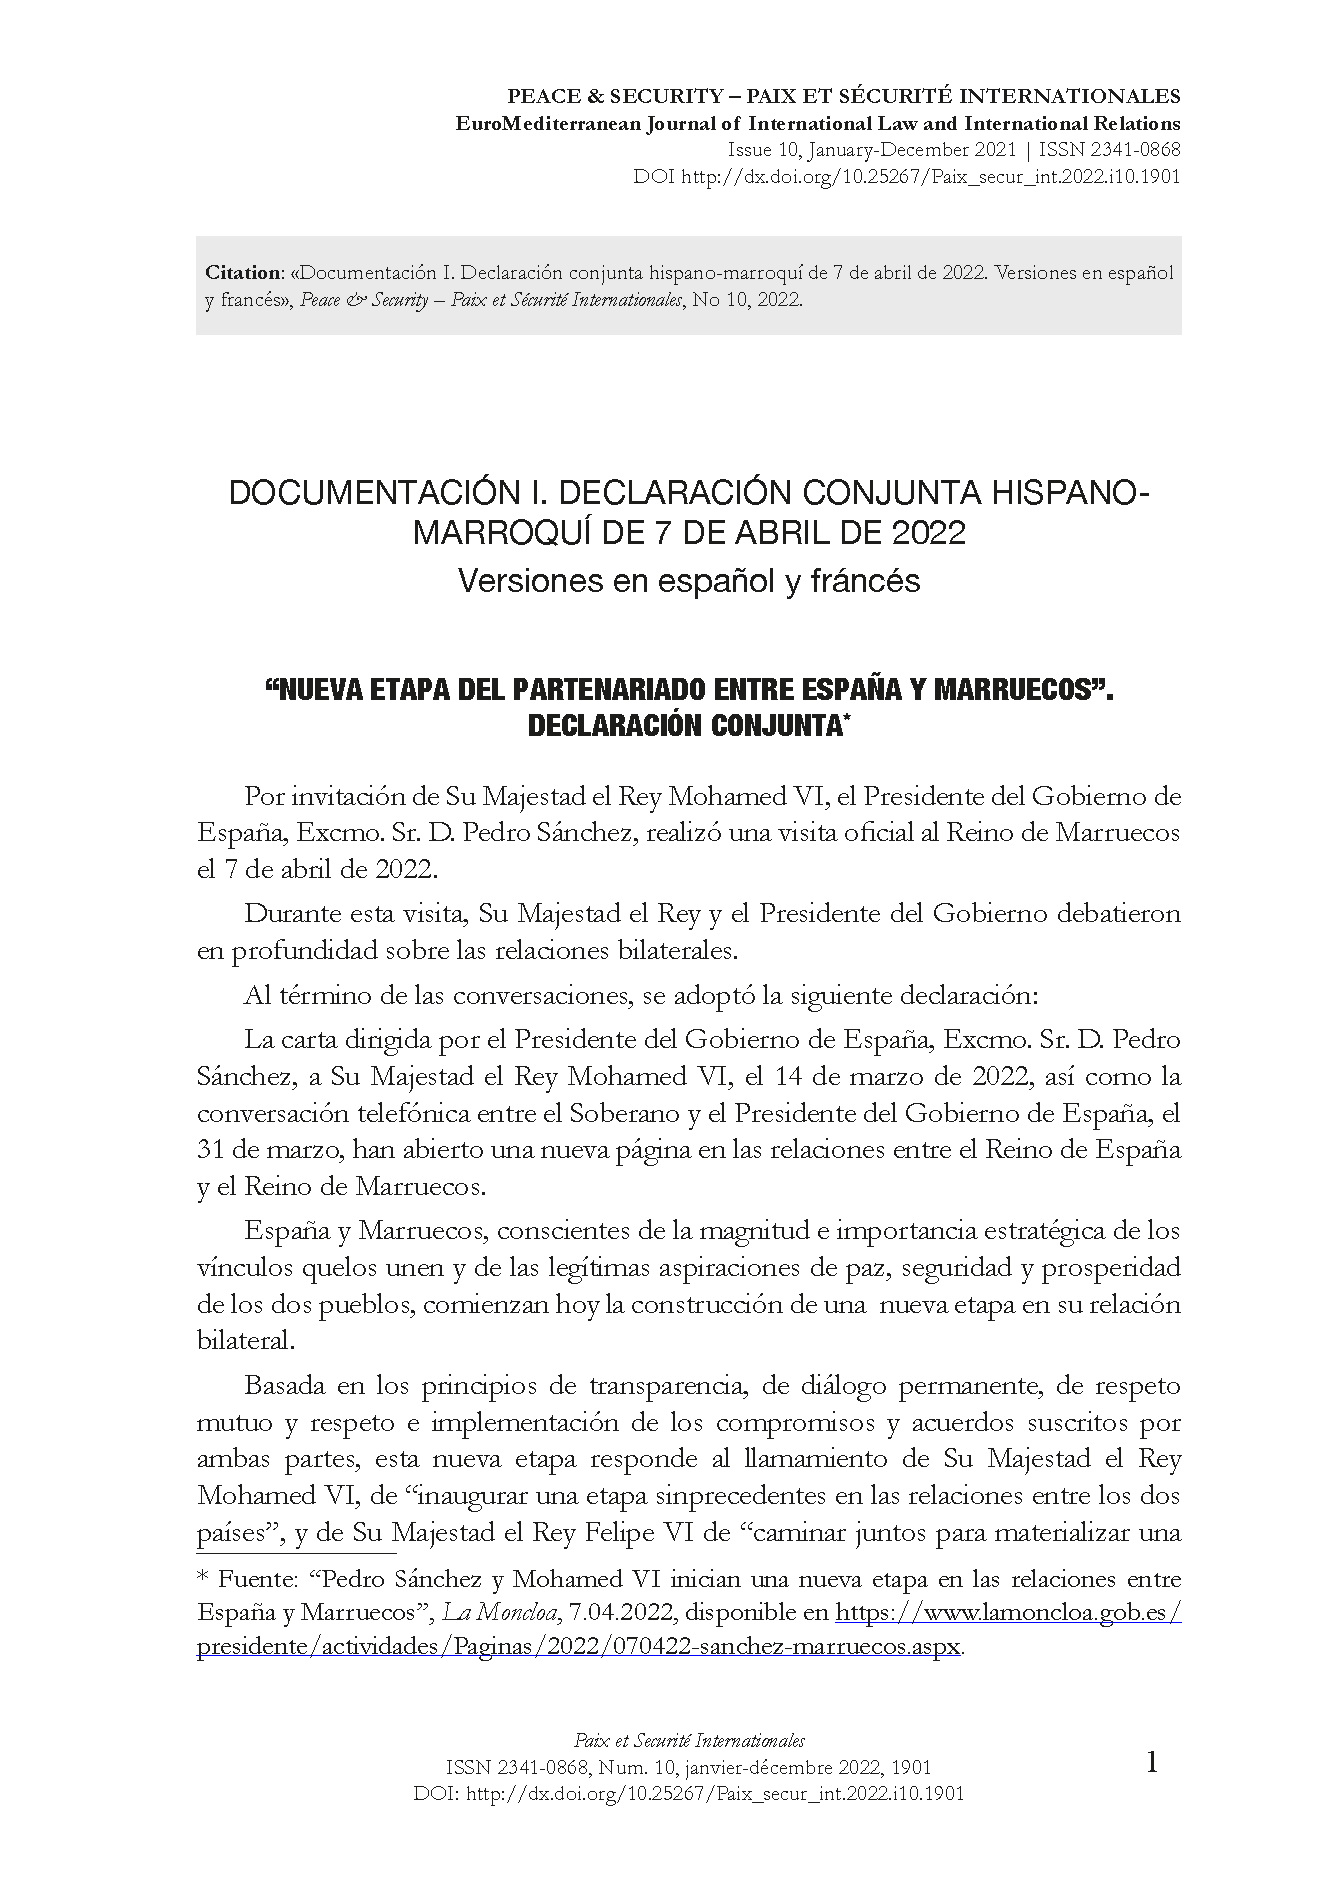 Documentación I. Declaración conjunta hispano-marroquí de 7 de abril de 2022 (versiones en español y francés)